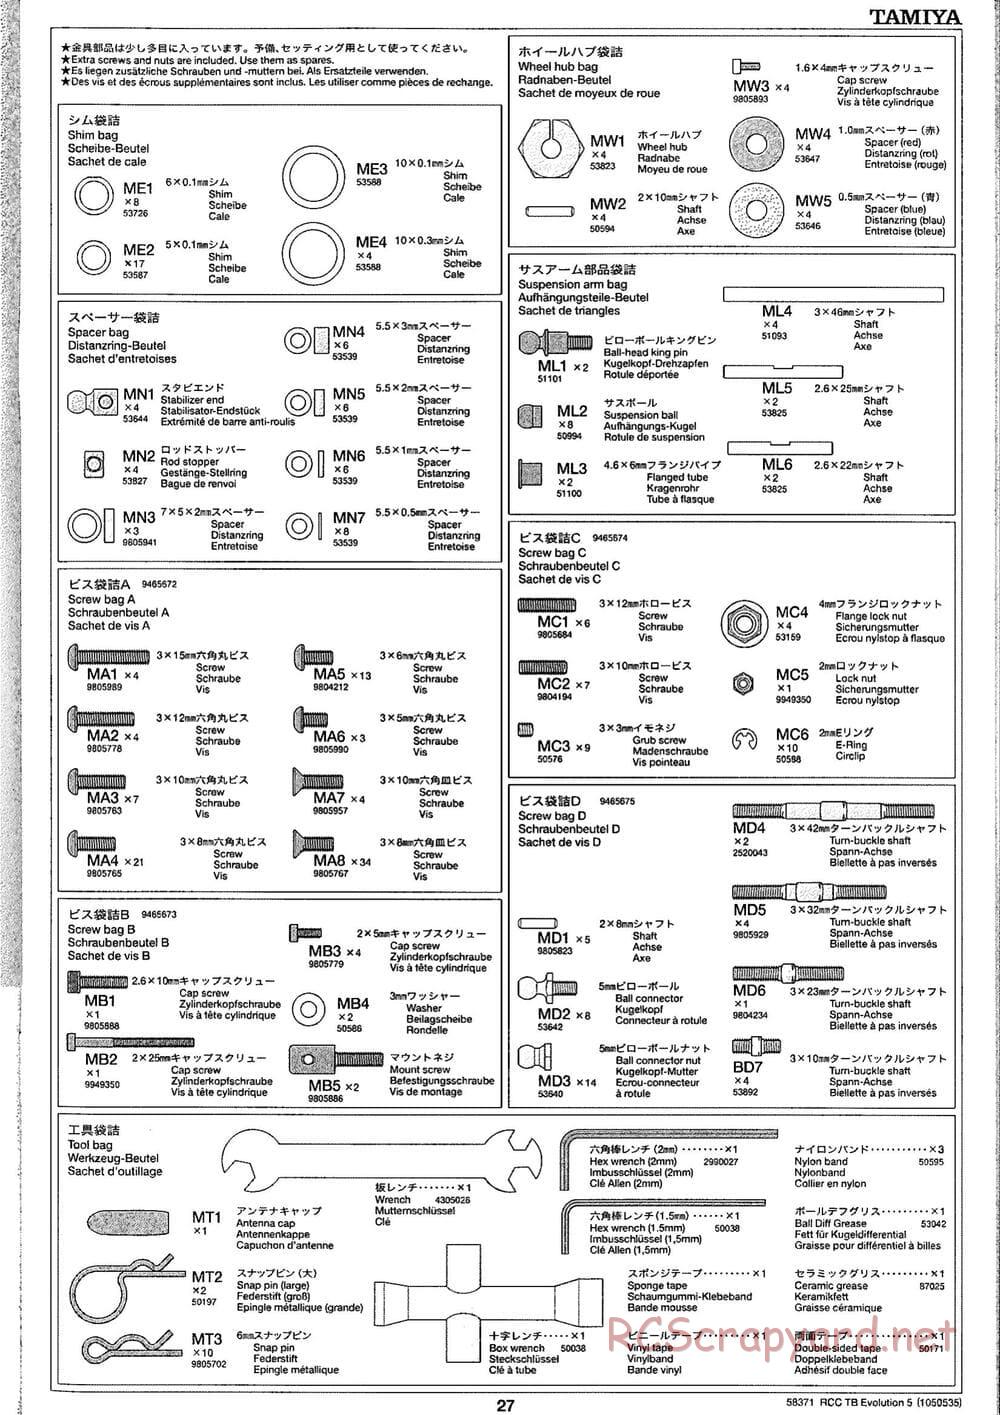 Tamiya - TB Evolution V Chassis - Manual - Page 27